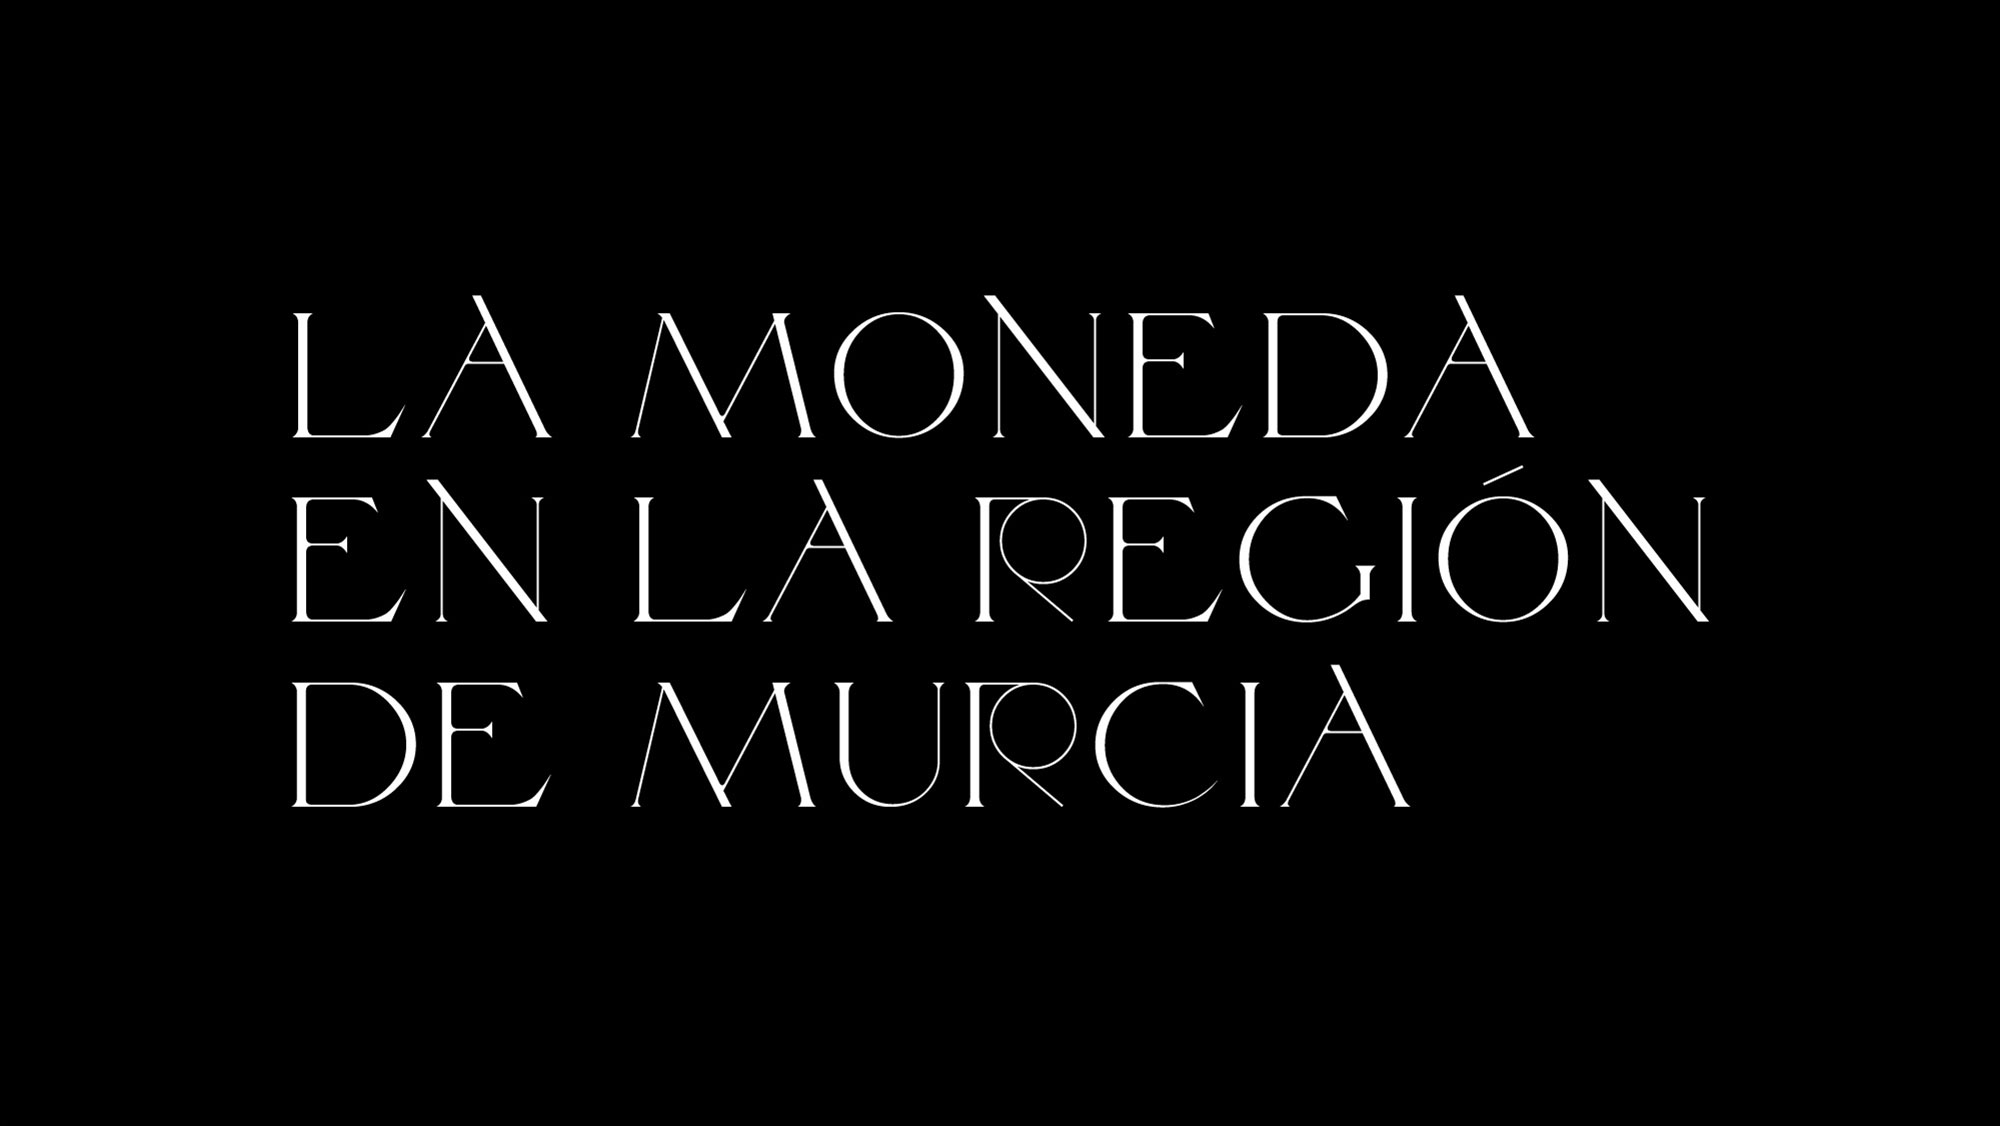 La moneda de la Región de Murcia